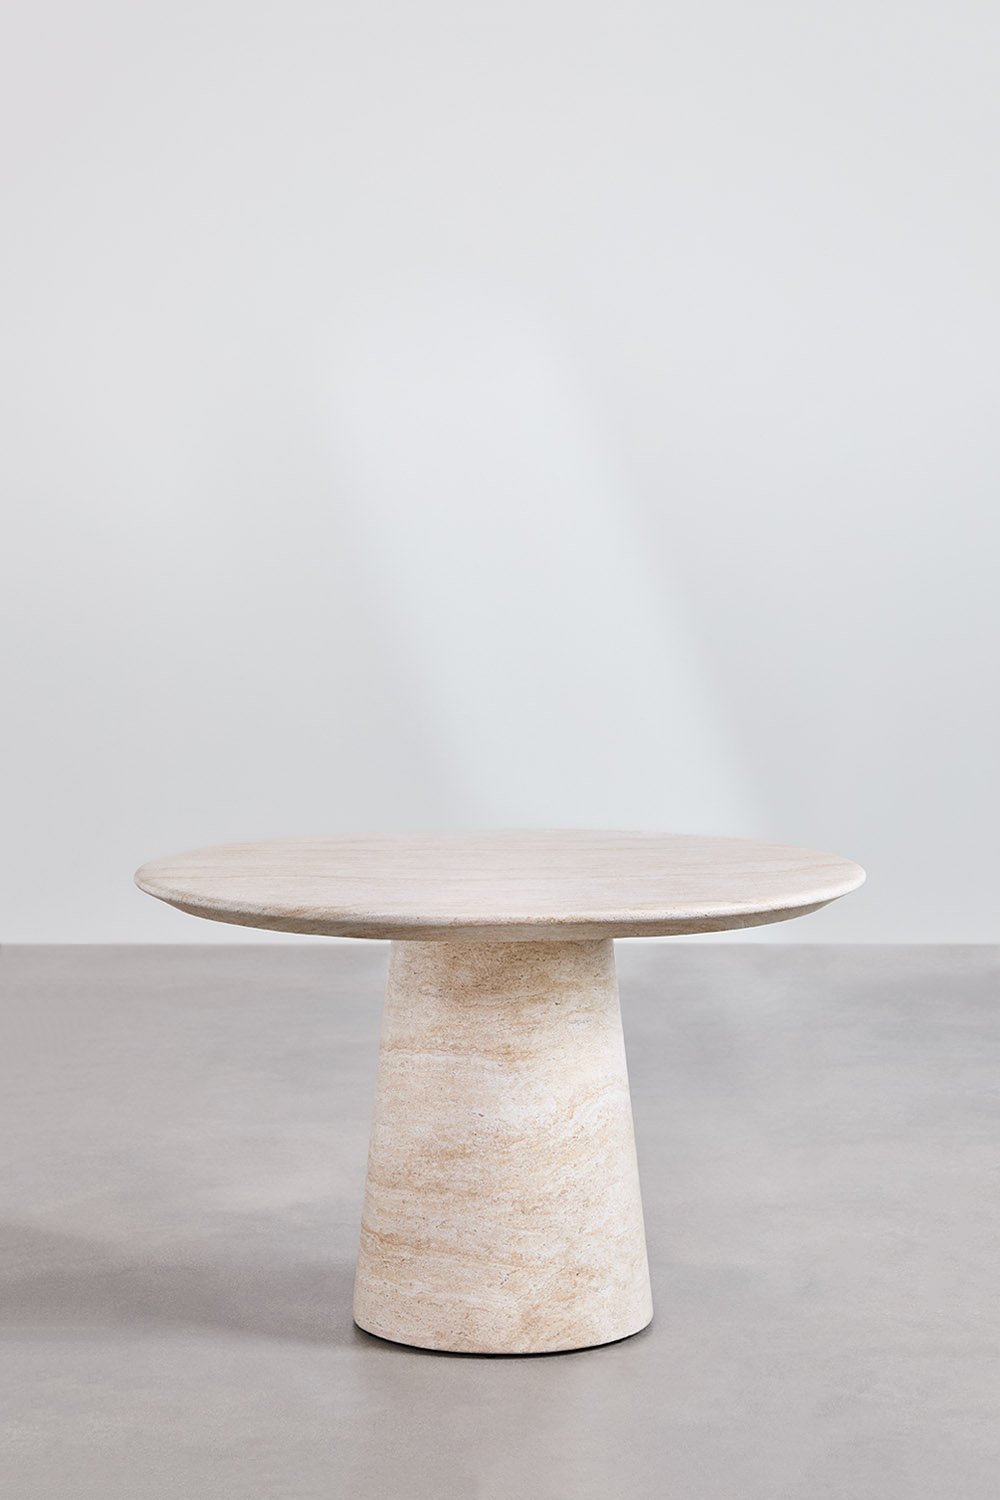 Ronde eettafel in cement met travertijnlook (Ø120 cm) Velia, galerij beeld 2